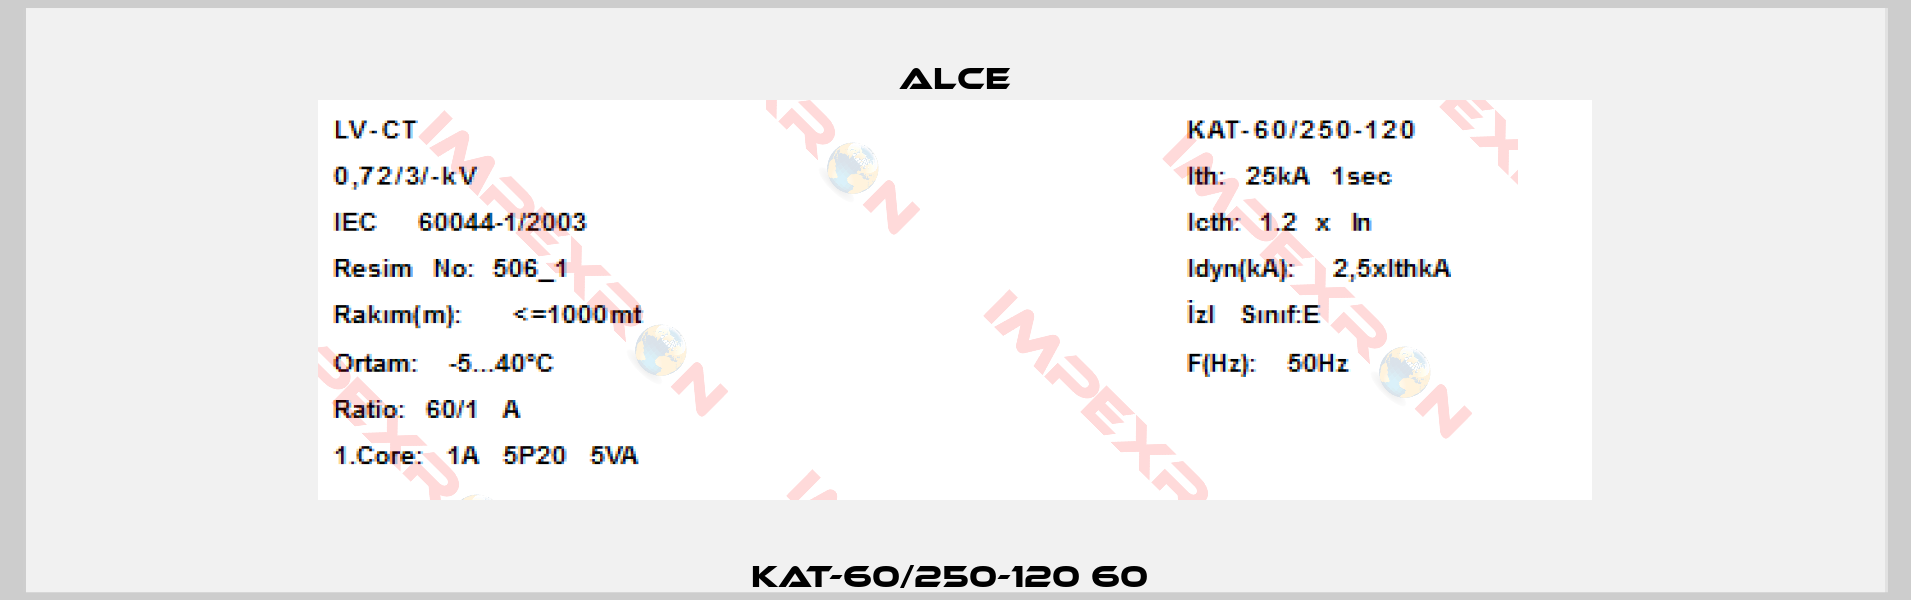 KAT-60/250-120 60 -3